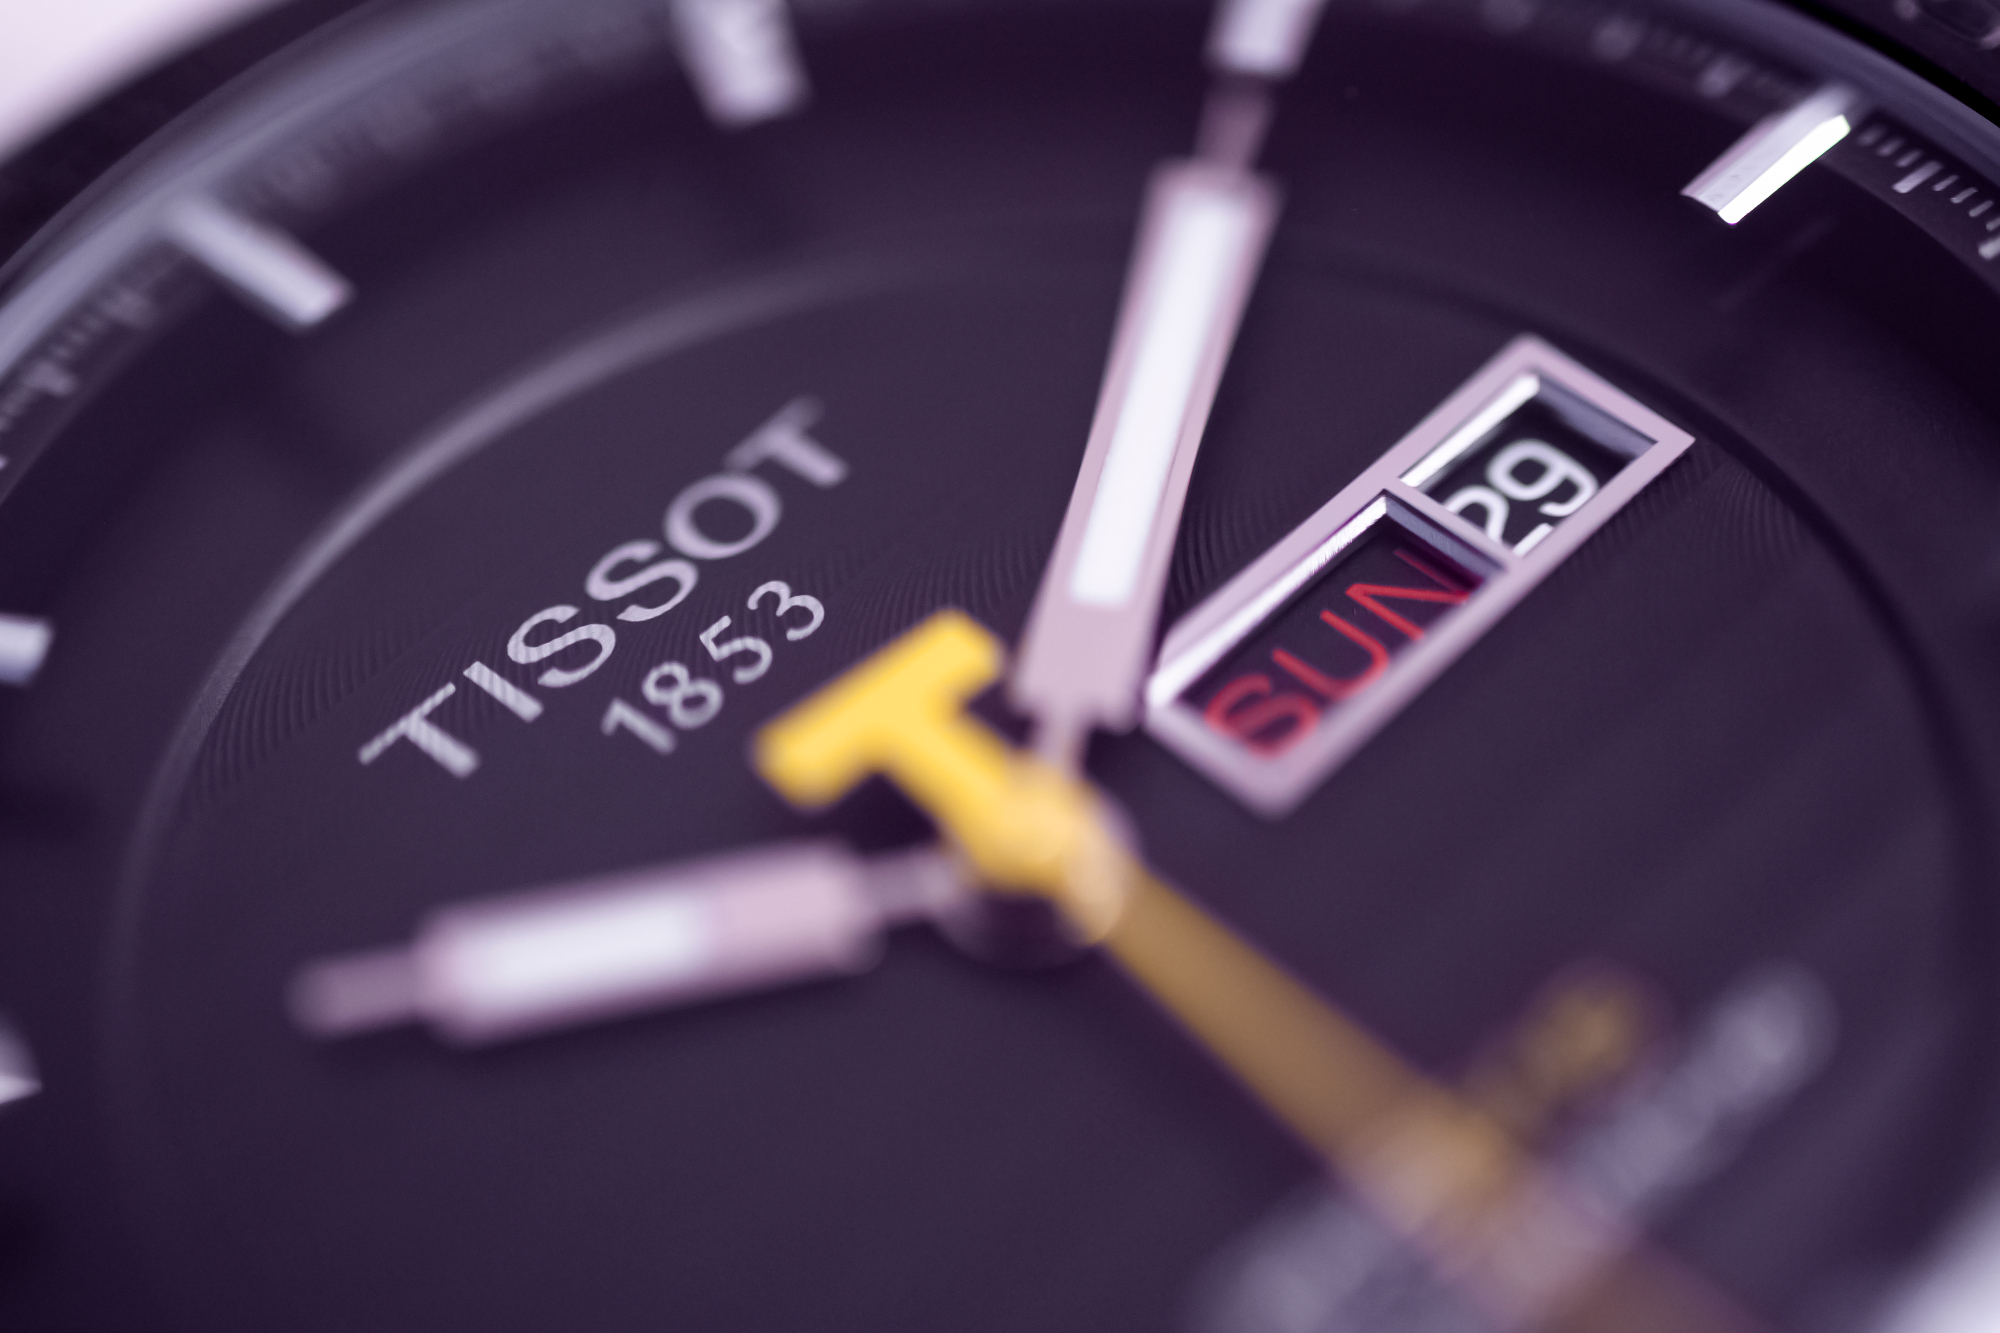 Poznati Tissot satovi imaju novu medijsku kampanju